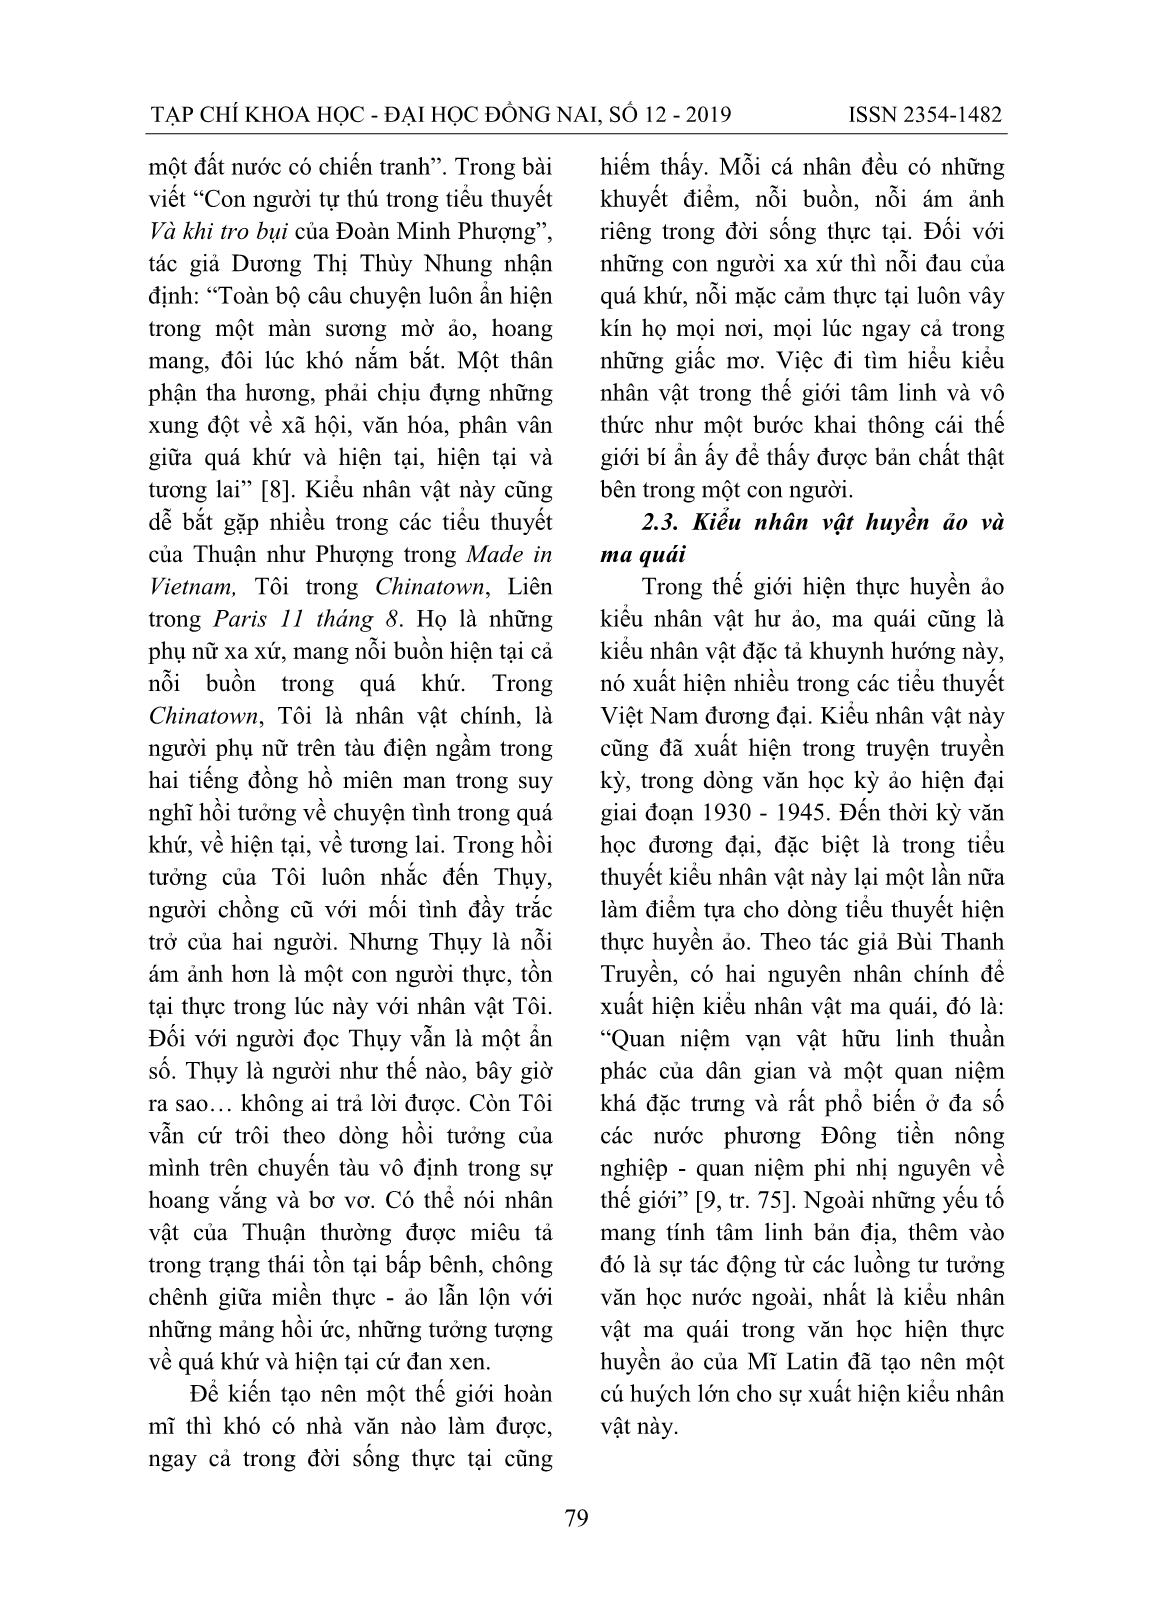 Nghệ thuật xây dựng nhân vật trong tiểu thuyết Việt Nam đương đại viết theo khuynh hướng hiện thực huyền ảo trang 8